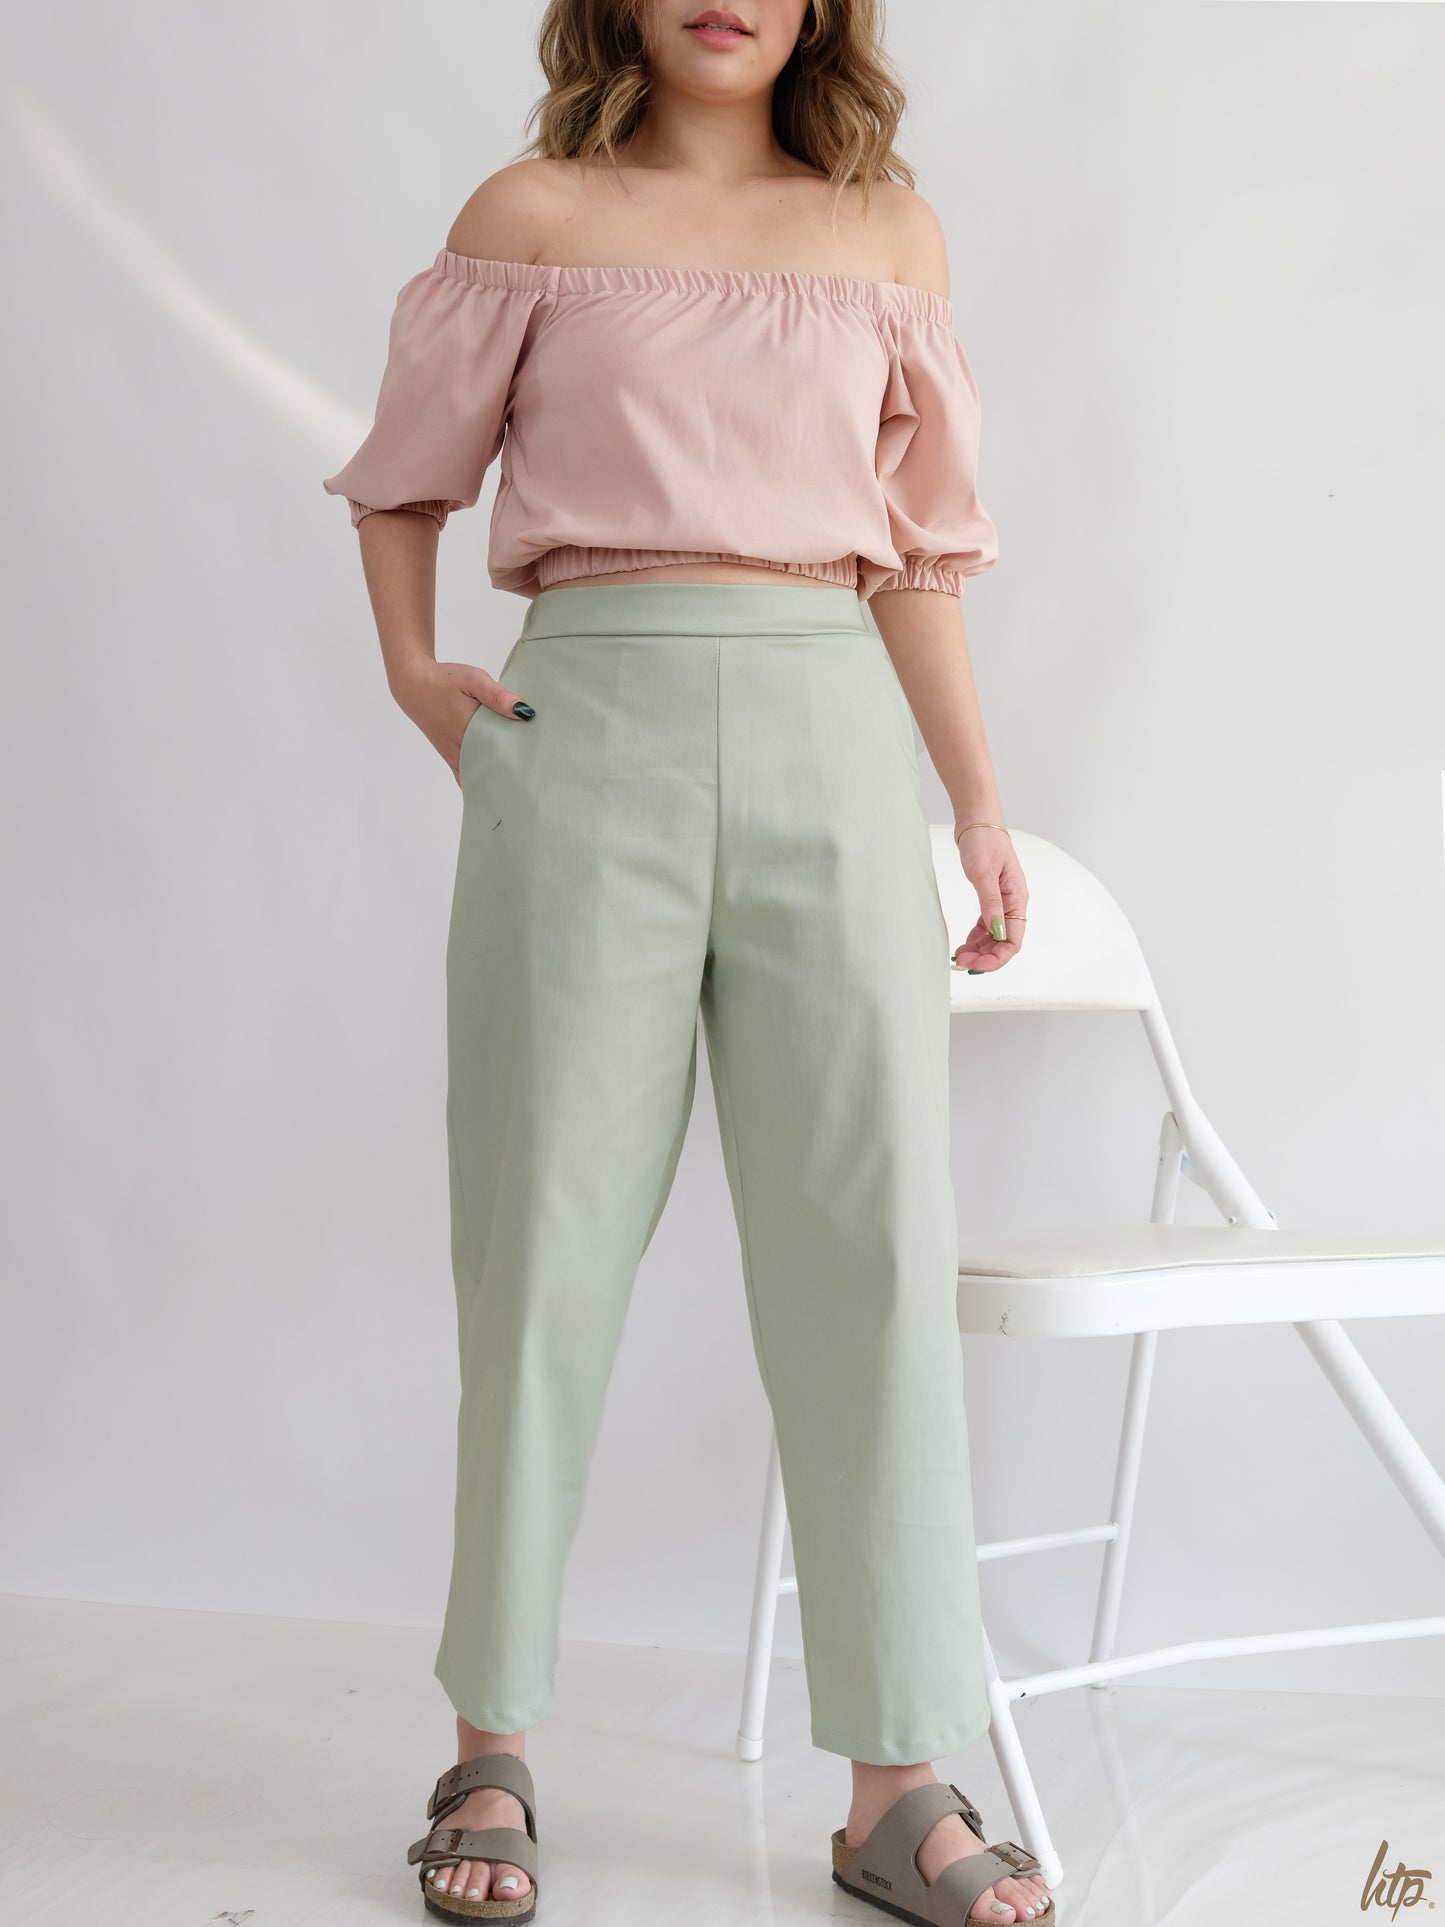 HTP Korean Pull-up Pocket Trousers for Women